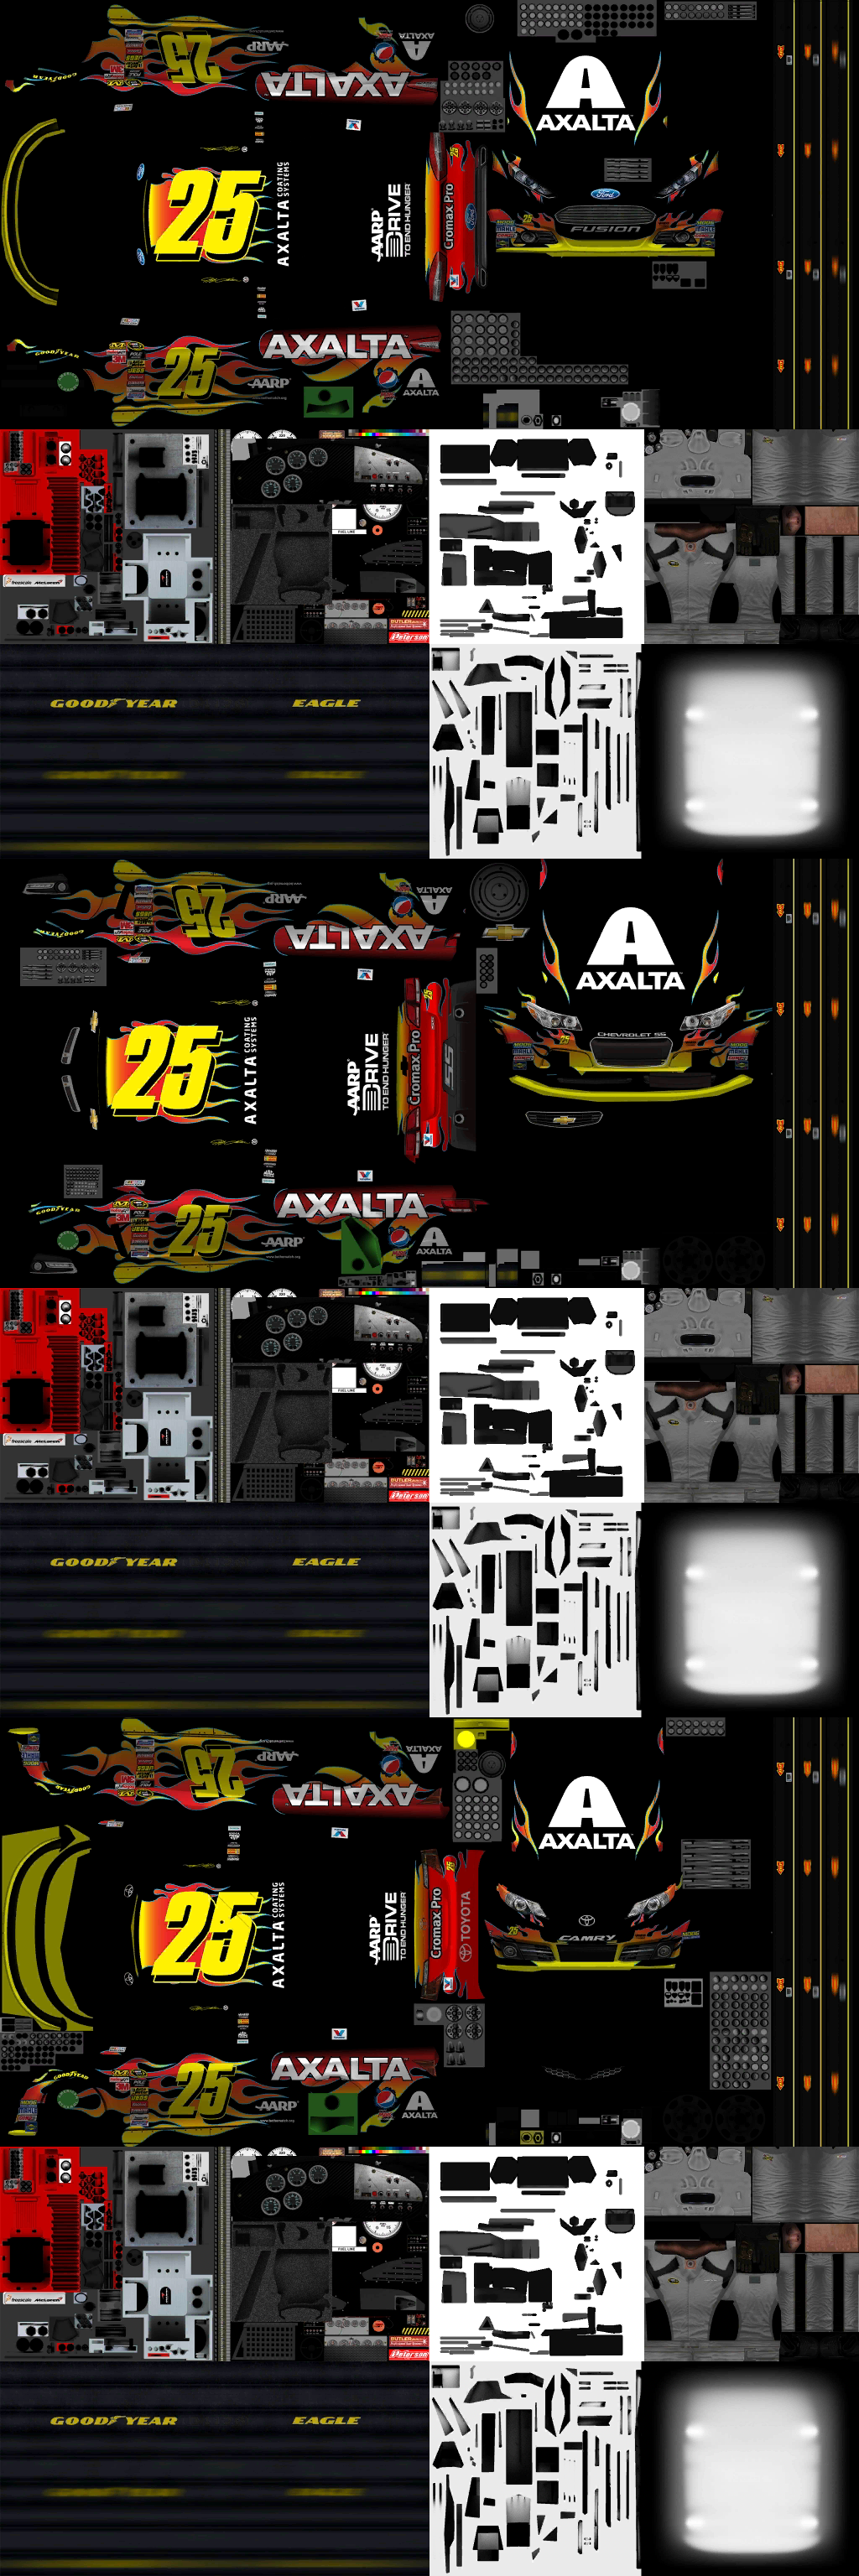 NASCAR Manager - Axalta